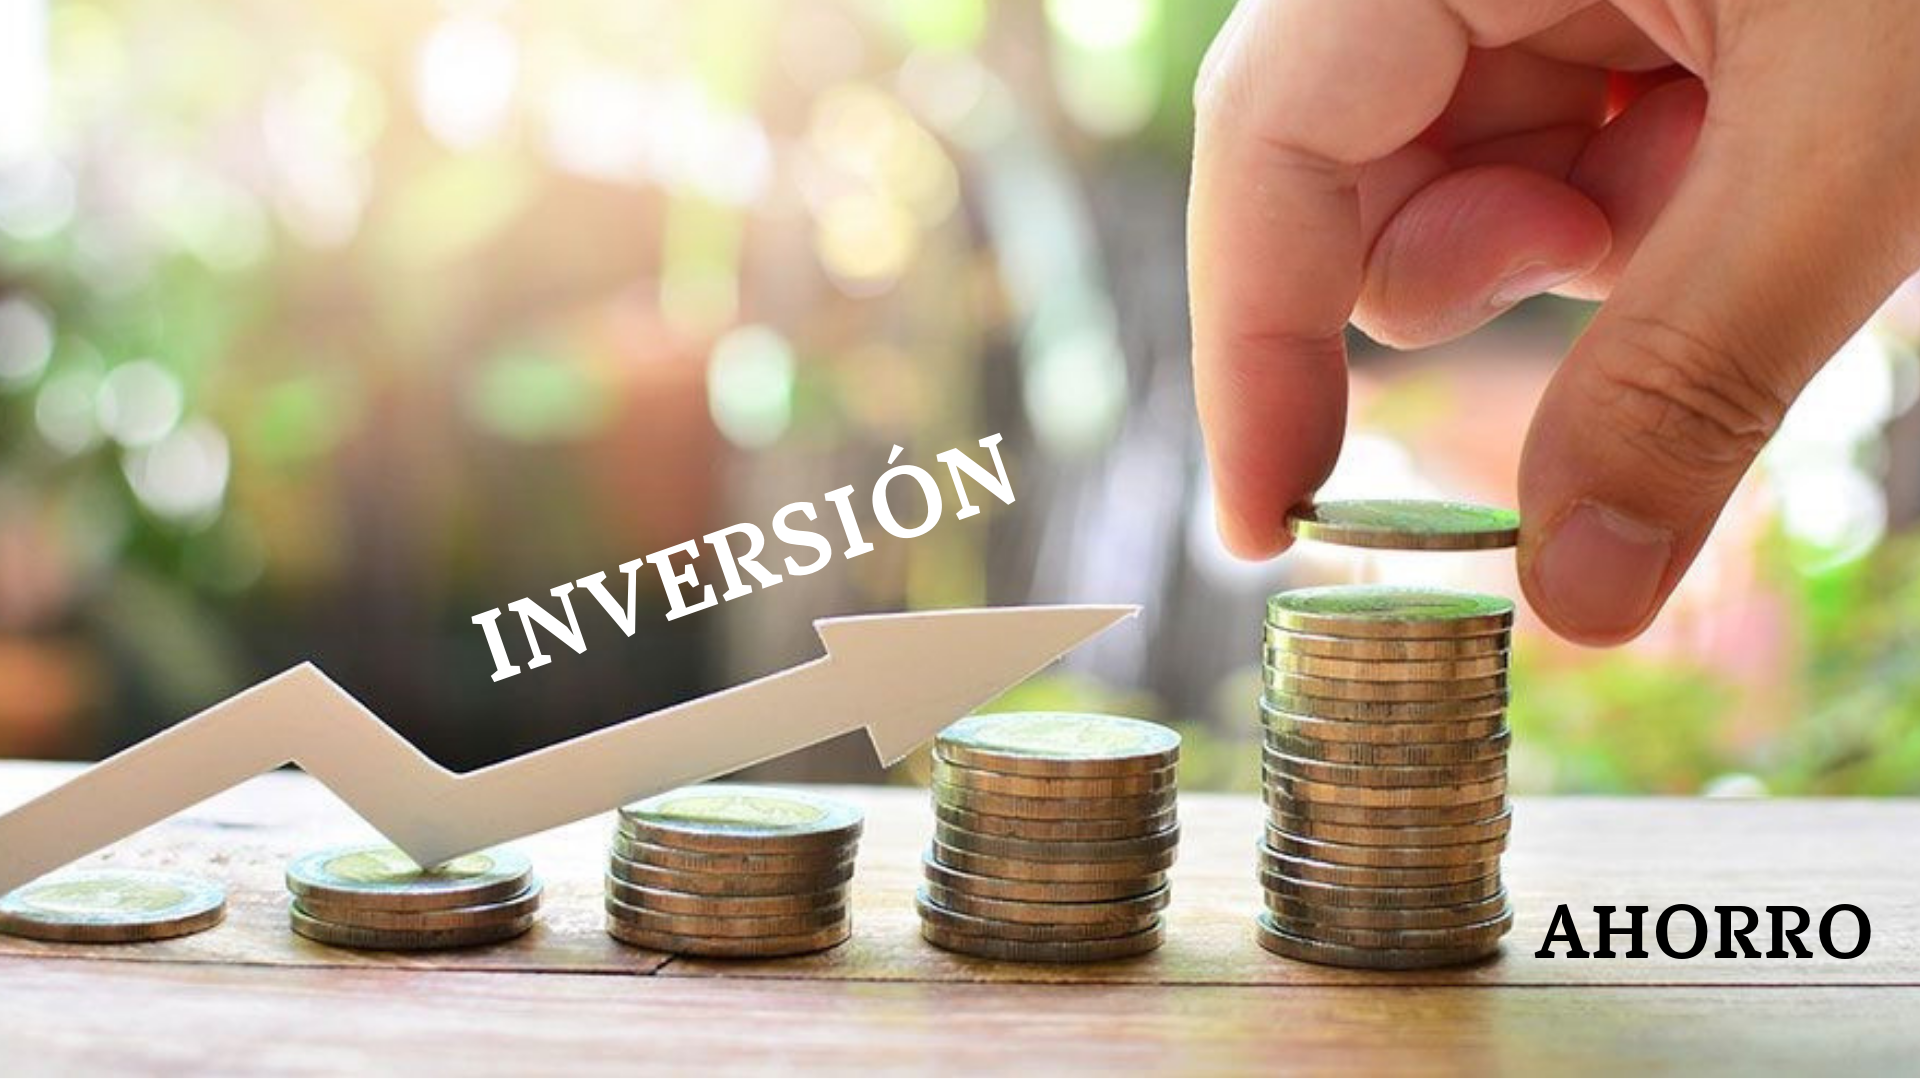 Ahorro vs inversión: descubre las diferencias ️